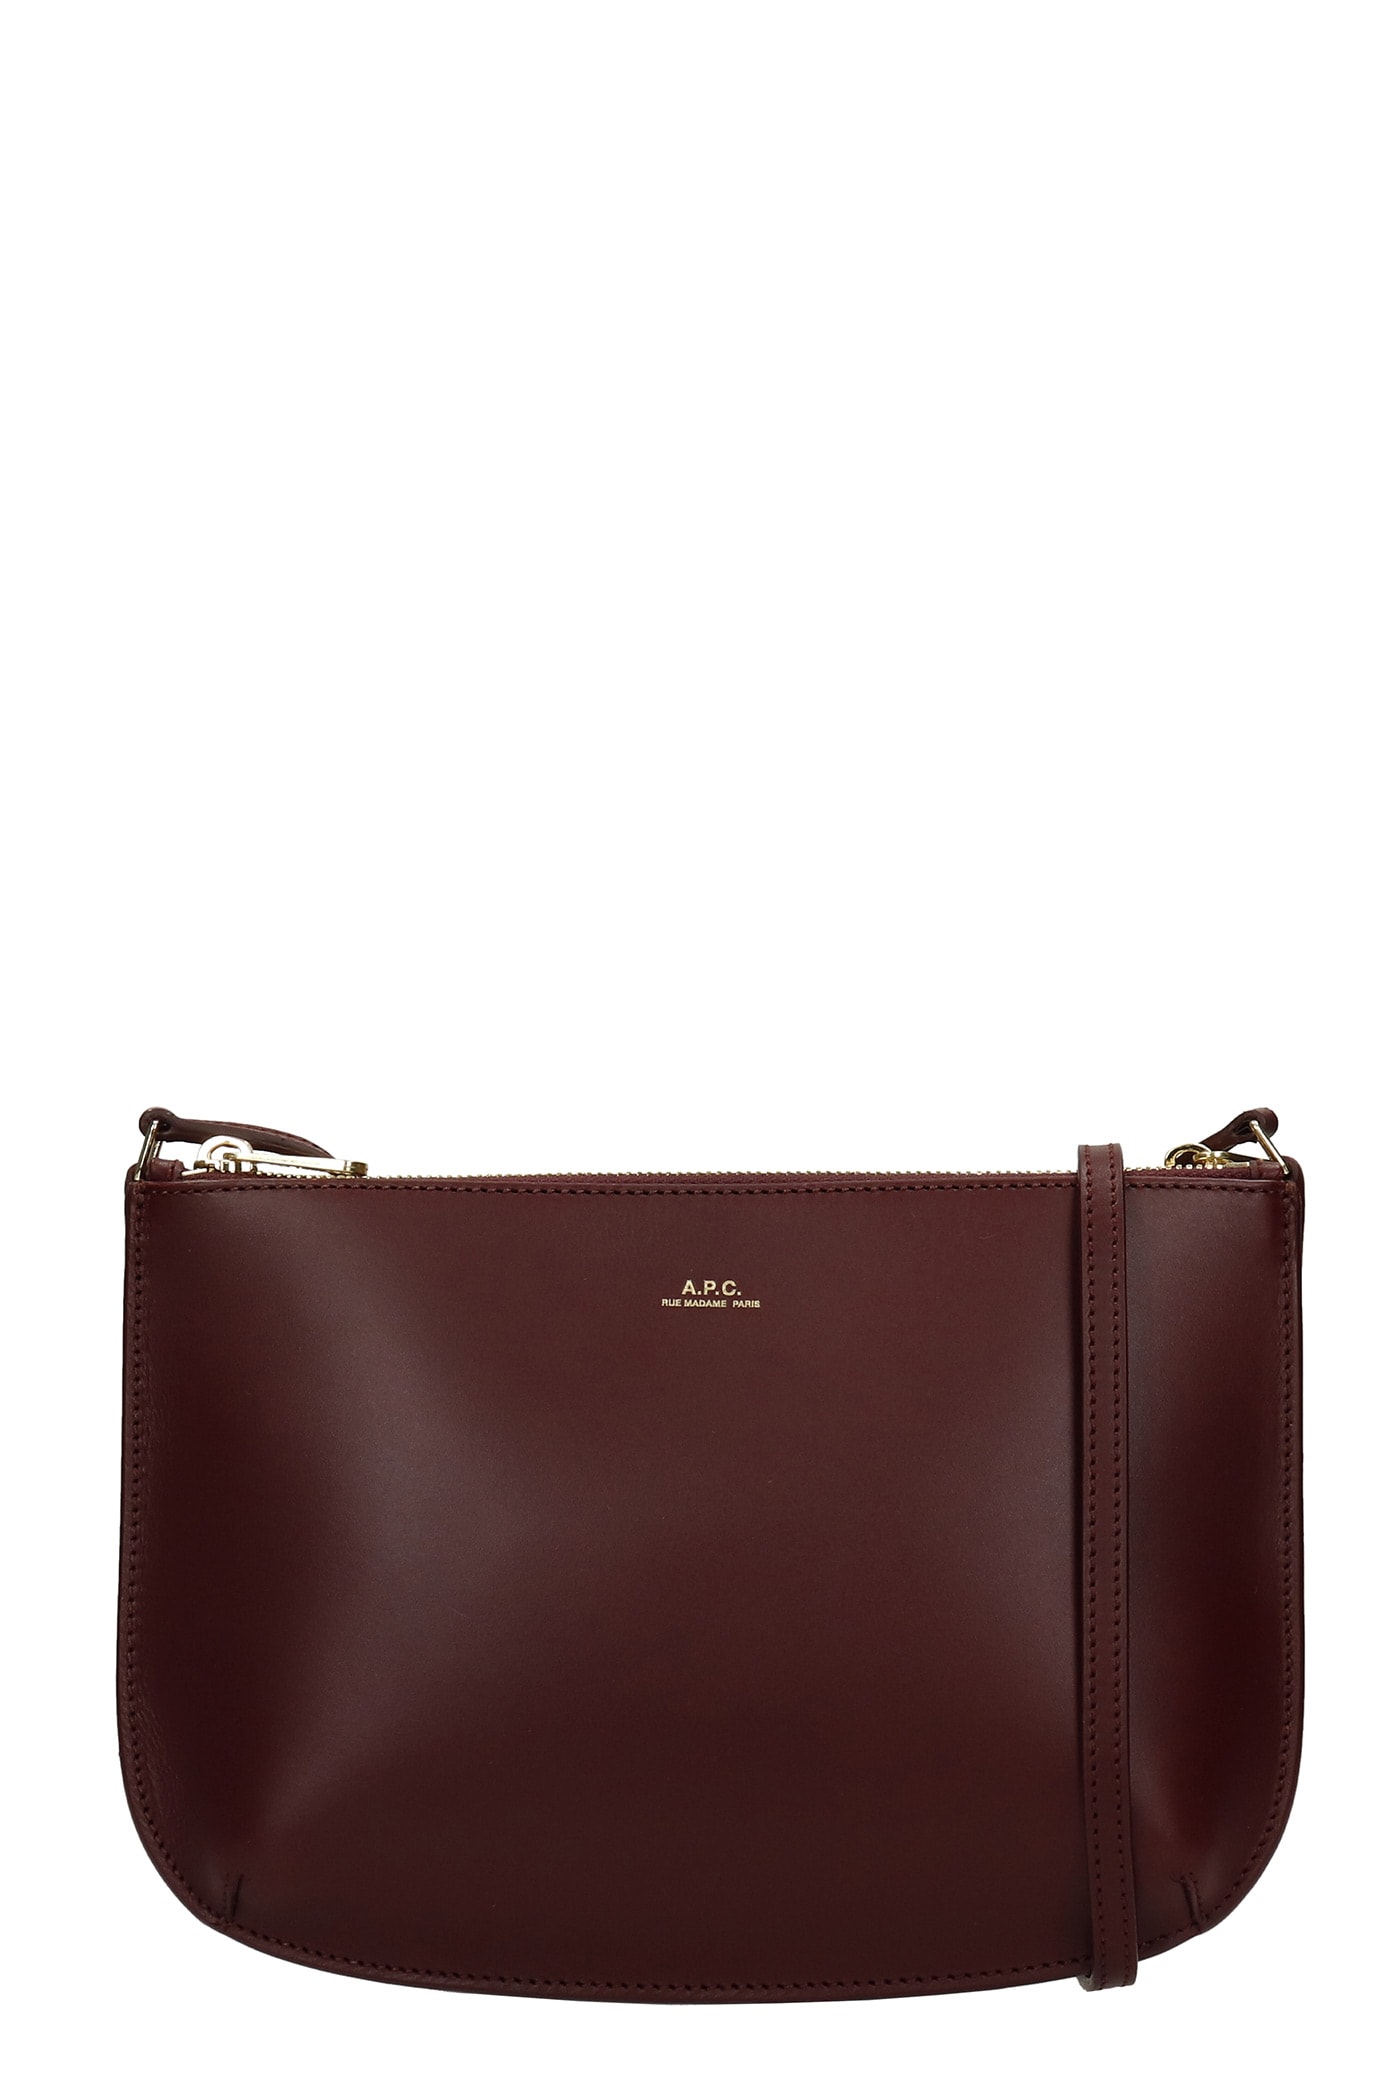 A.P.C. Sarah Shoulder Bag In Bordeaux Leather